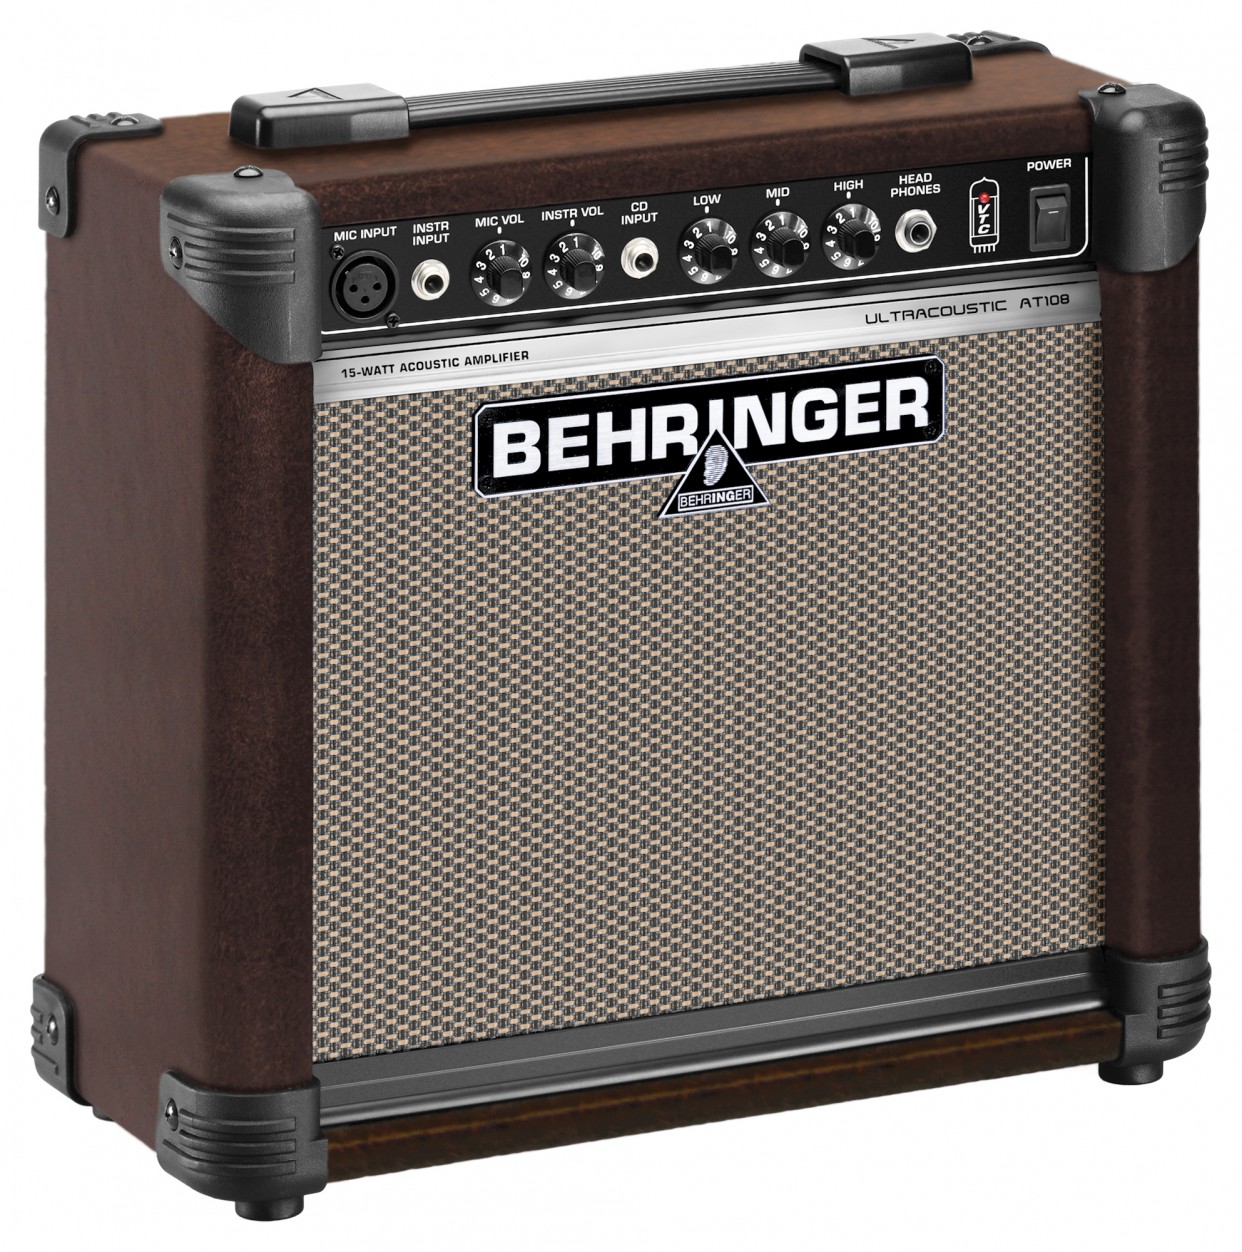 Behringer AT108 Ultracoustic комбо усилитель для акустических инструментов